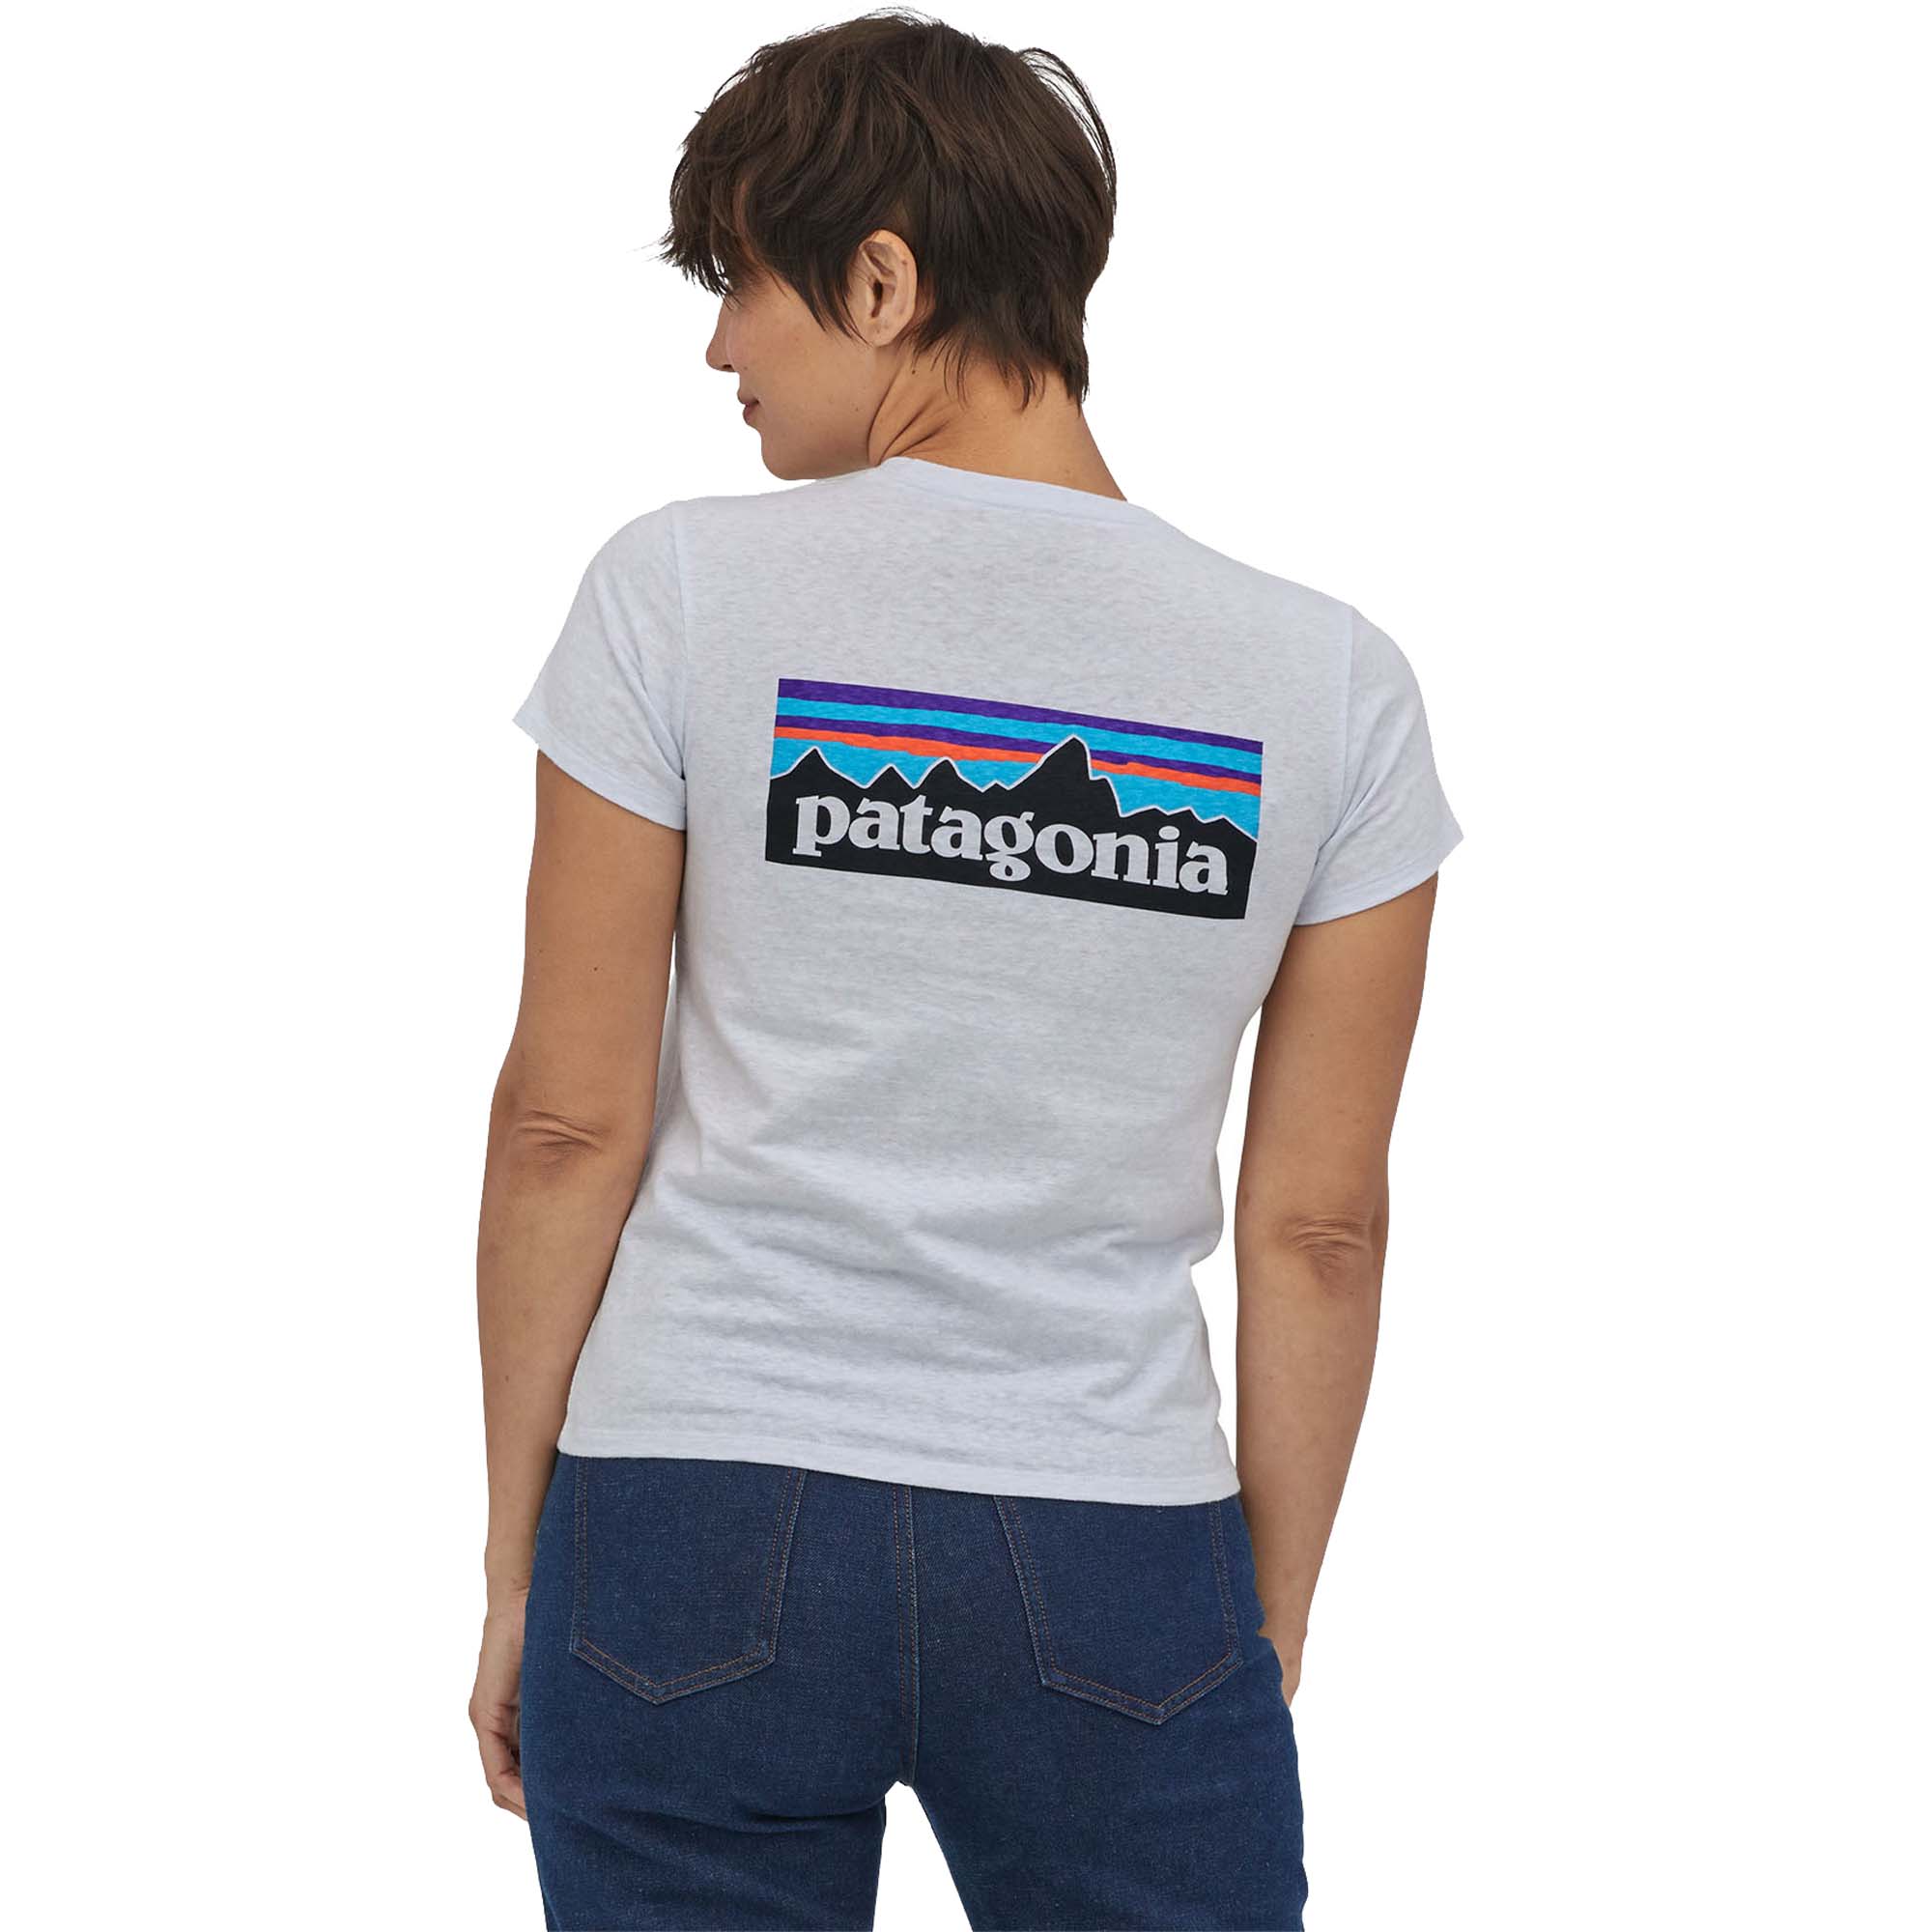 Photos - Trekking Clothes Patagonia P-6 Logo Responsibili-Tee Women's T-Shirt UK 10 White 37567-WHI 